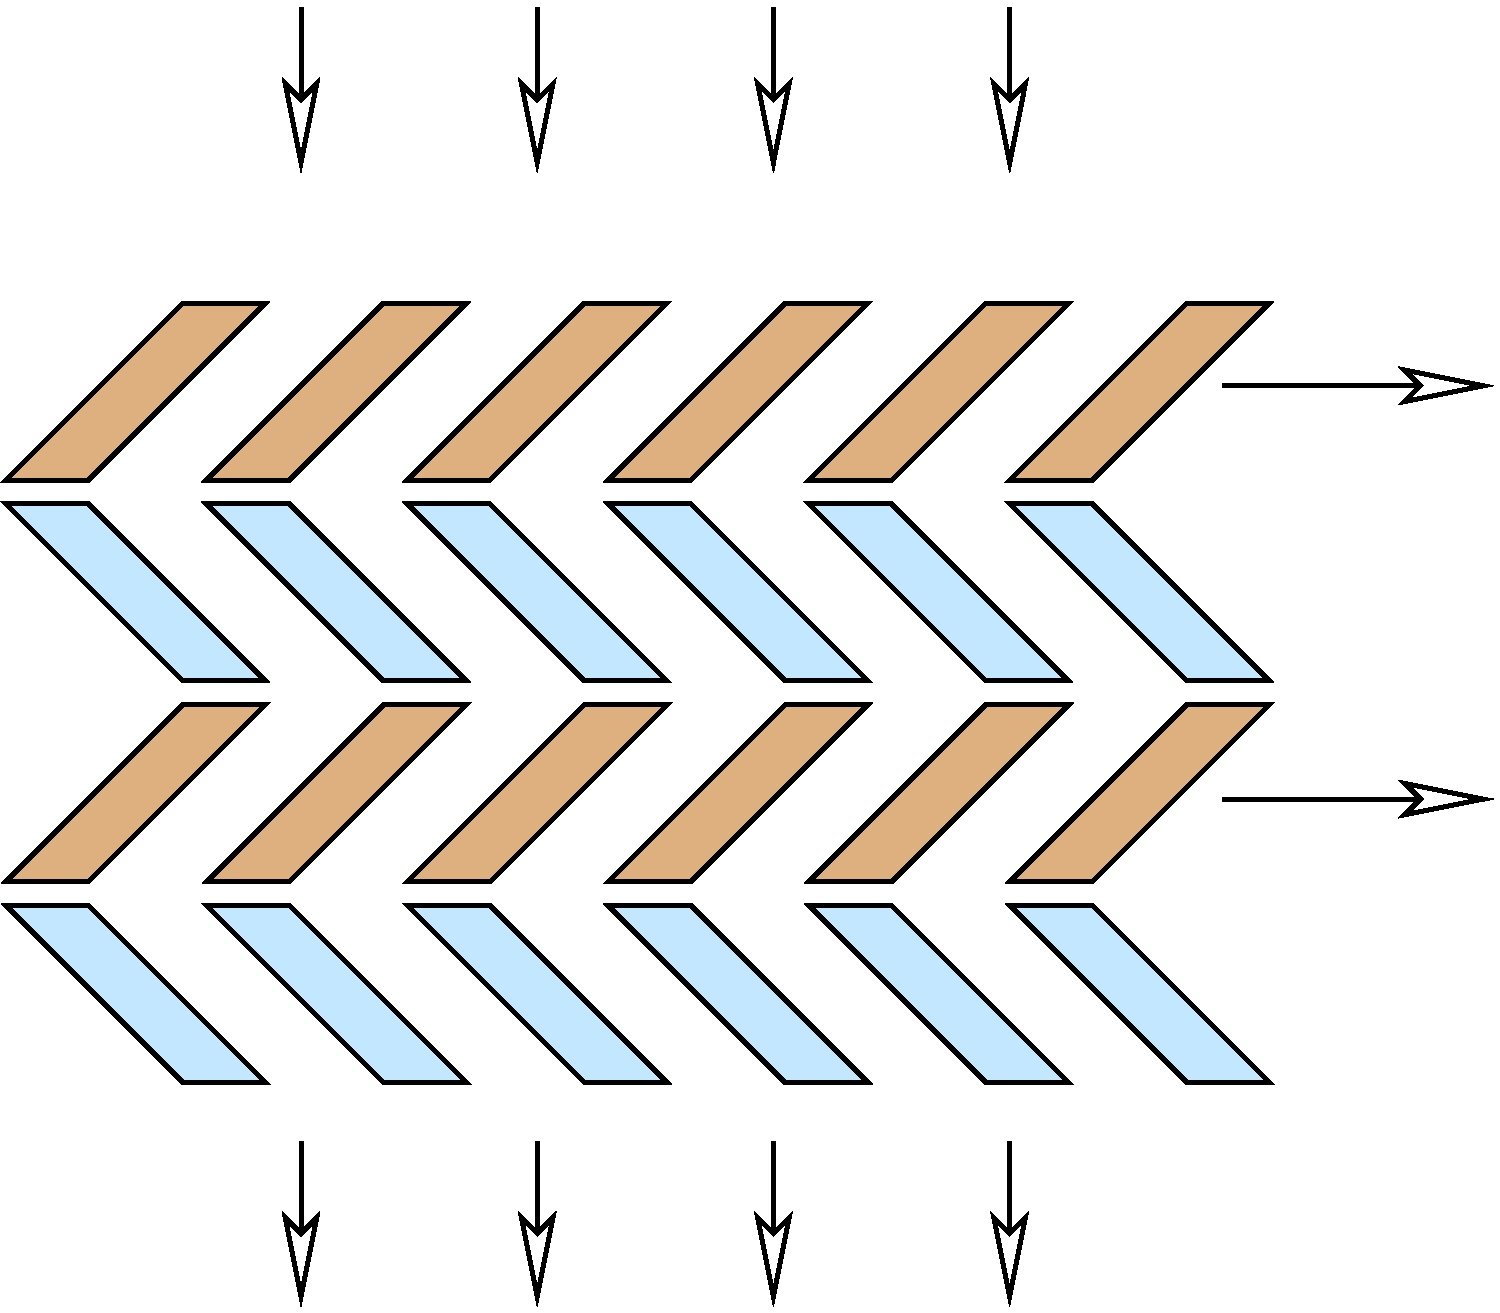 KAPITOLA 3. VAKUOVÉ VÝVĚVY Obrázek 3.13: Turbomolekulární vývěva - detail lopatek: rotor - hnědá barva a stator - modrá barva.